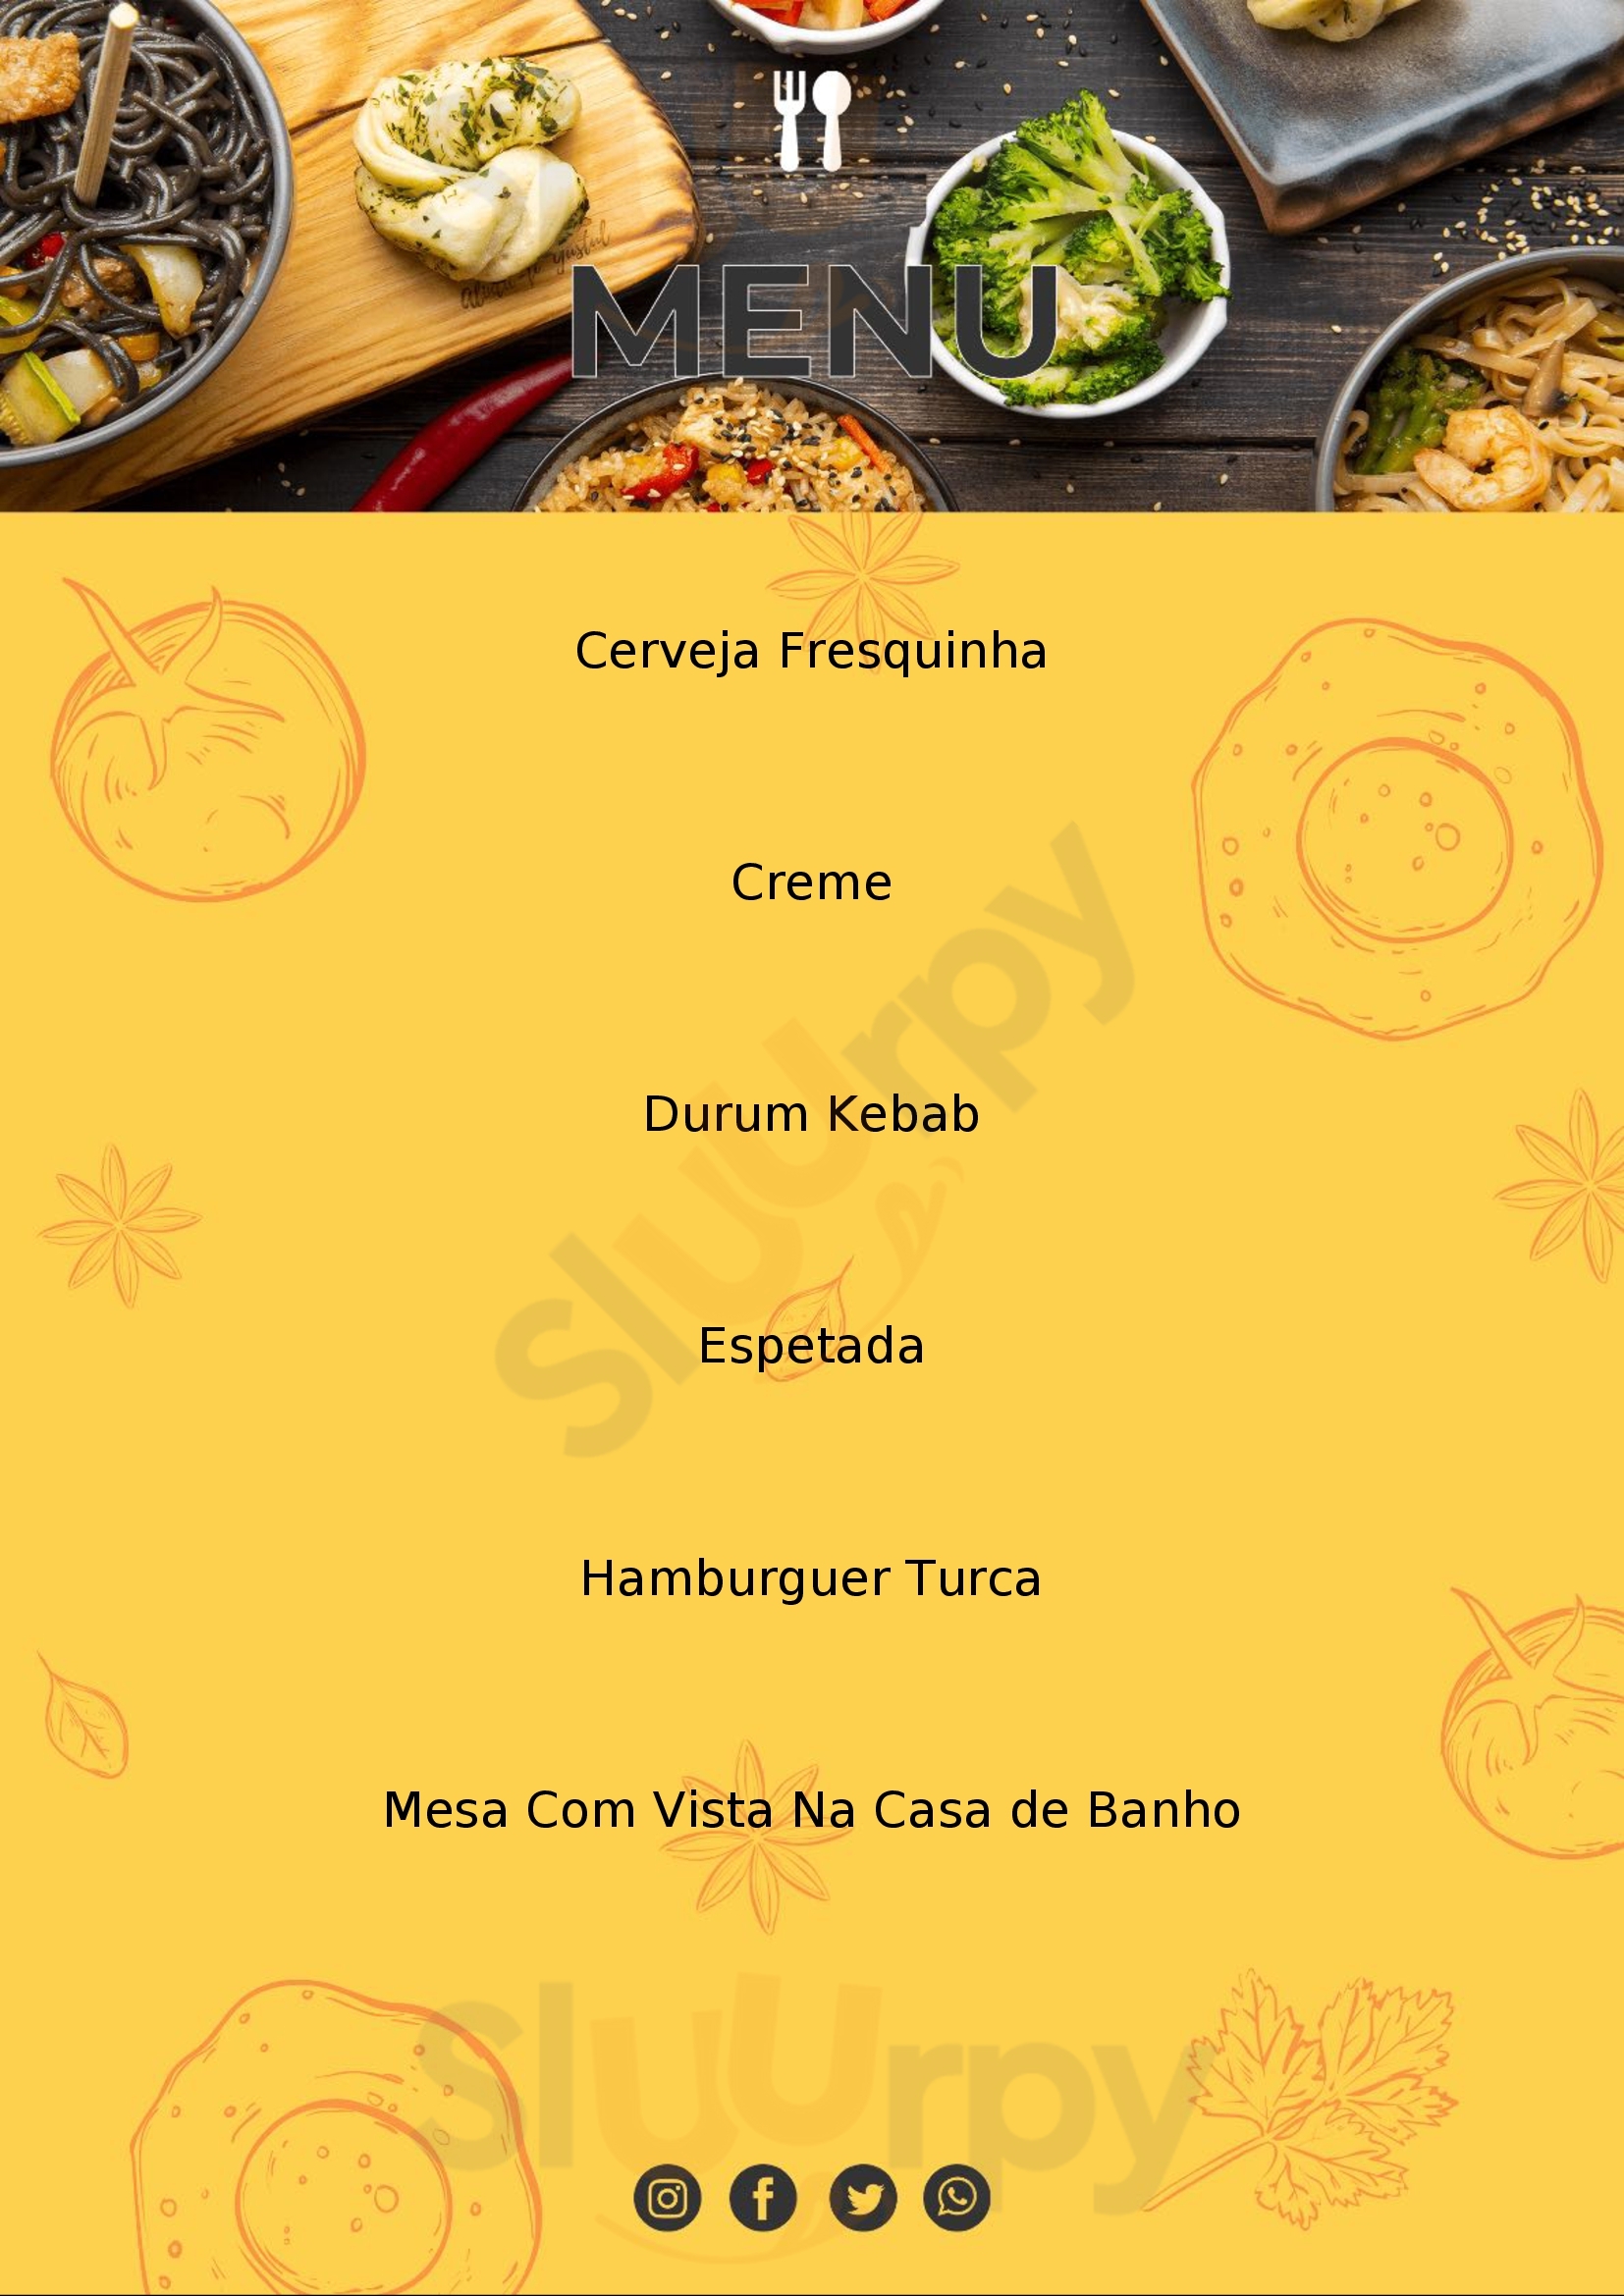 Restaurante Burcu Kebab's Vila Nova de Famalicão Menu - 1